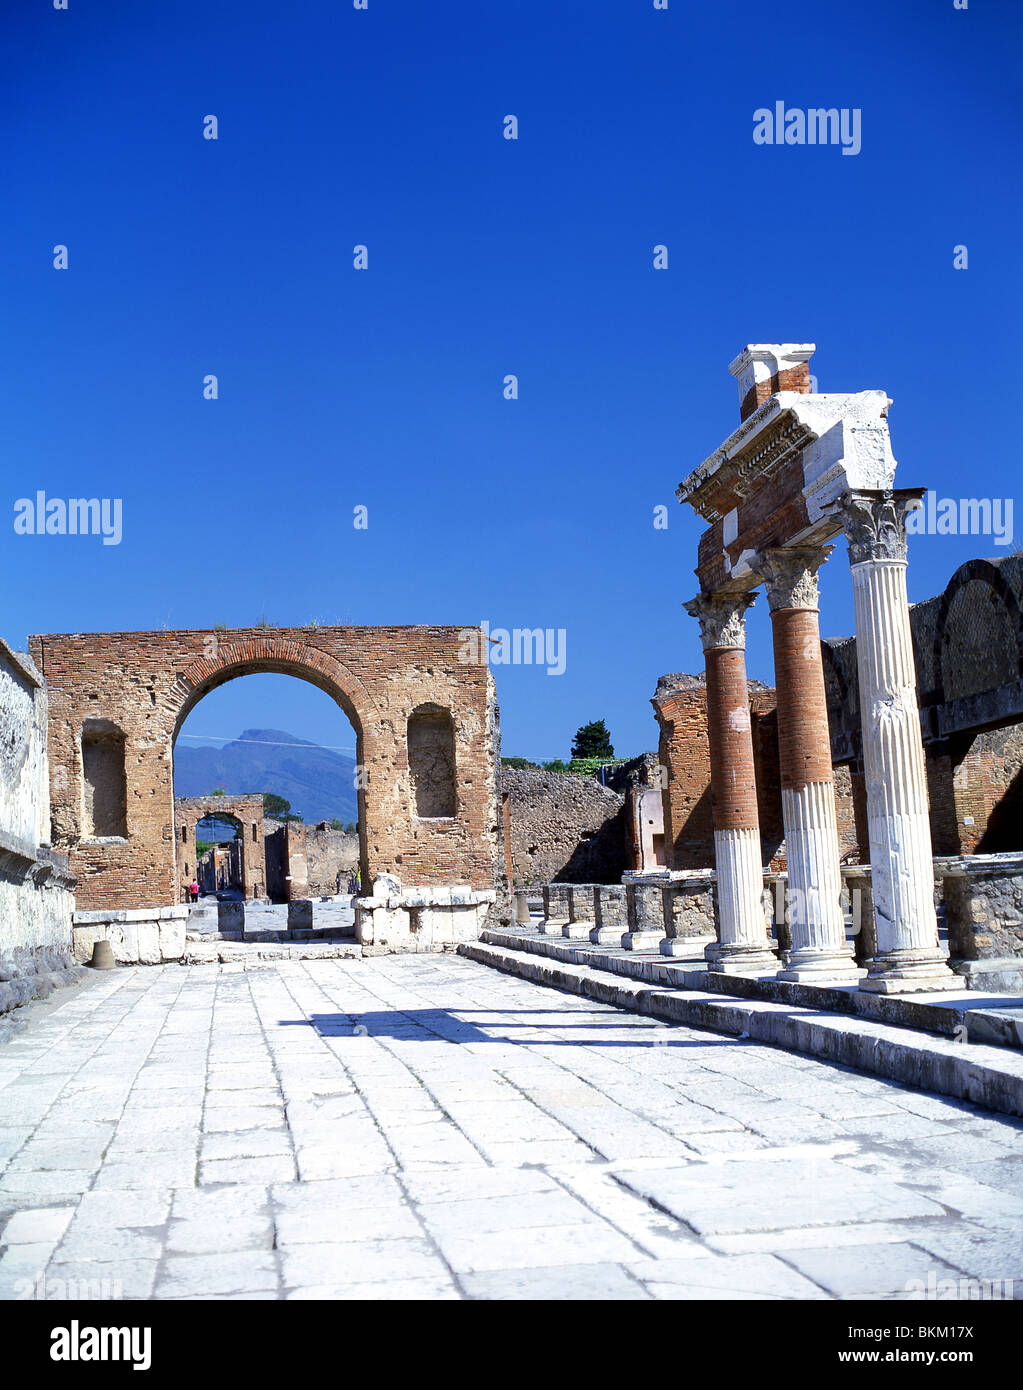 Vista dell'Arco celebrativo che mostra il Vesuvio, l'antica città di Pompei, Pompei, la città metropolitana di Napoli, la regione Campania, Italia Foto Stock